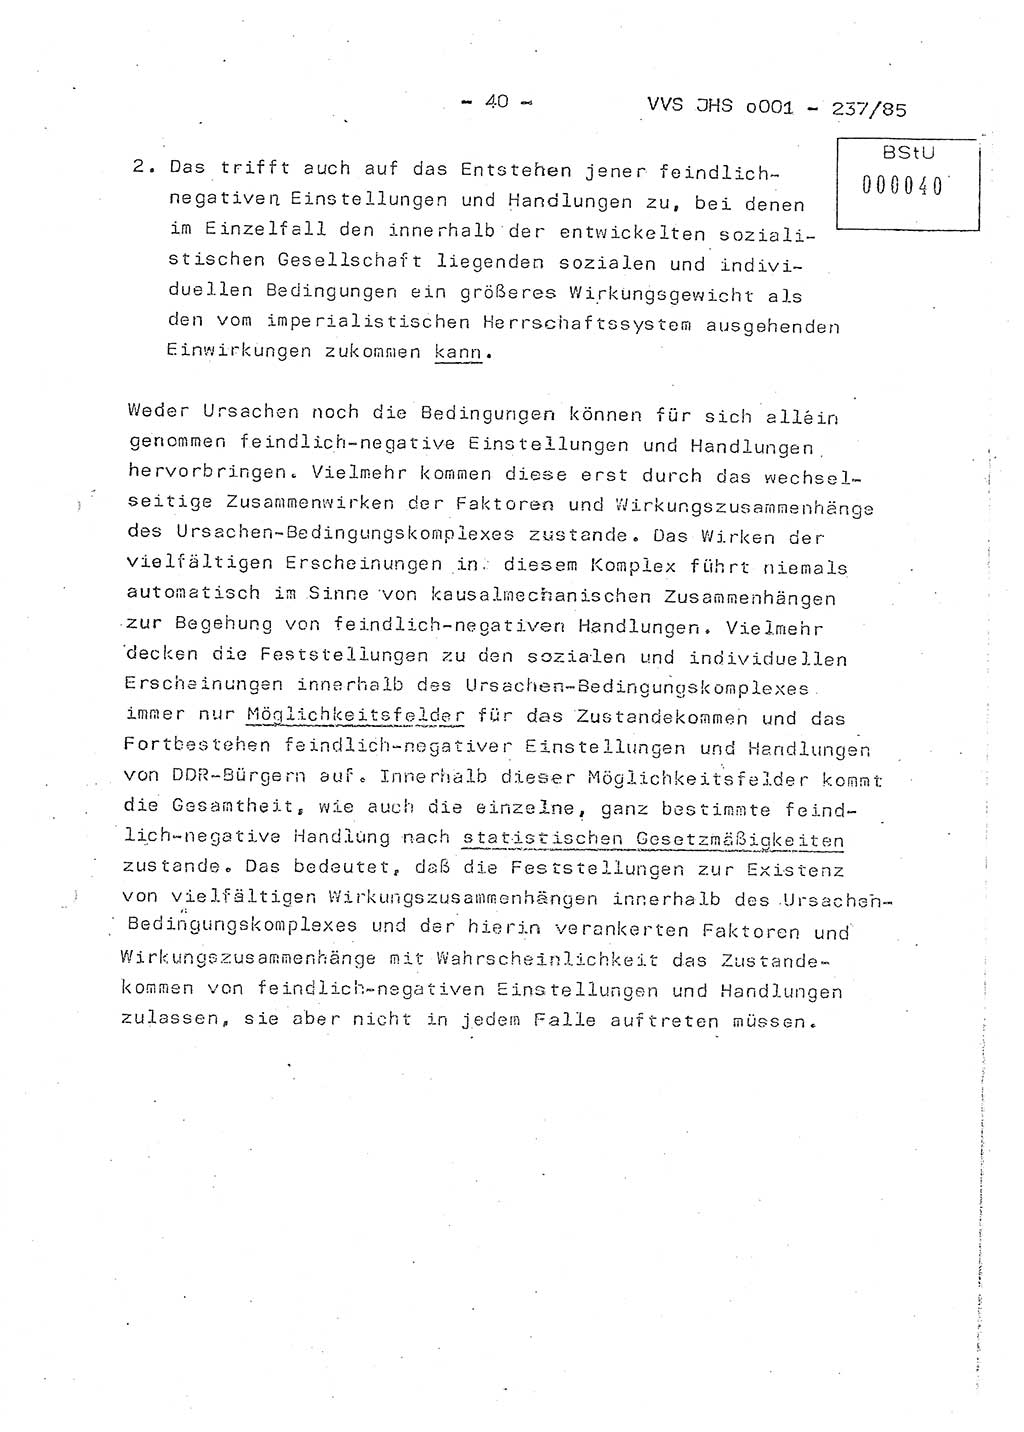 Dissertation Oberstleutnant Peter Jakulski (JHS), Oberstleutnat Christian Rudolph (HA Ⅸ), Major Horst Böttger (ZMD), Major Wolfgang Grüneberg (JHS), Major Albert Meutsch (JHS), Ministerium für Staatssicherheit (MfS) [Deutsche Demokratische Republik (DDR)], Juristische Hochschule (JHS), Vertrauliche Verschlußsache (VVS) o001-237/85, Potsdam 1985, Seite 40 (Diss. MfS DDR JHS VVS o001-237/85 1985, S. 40)